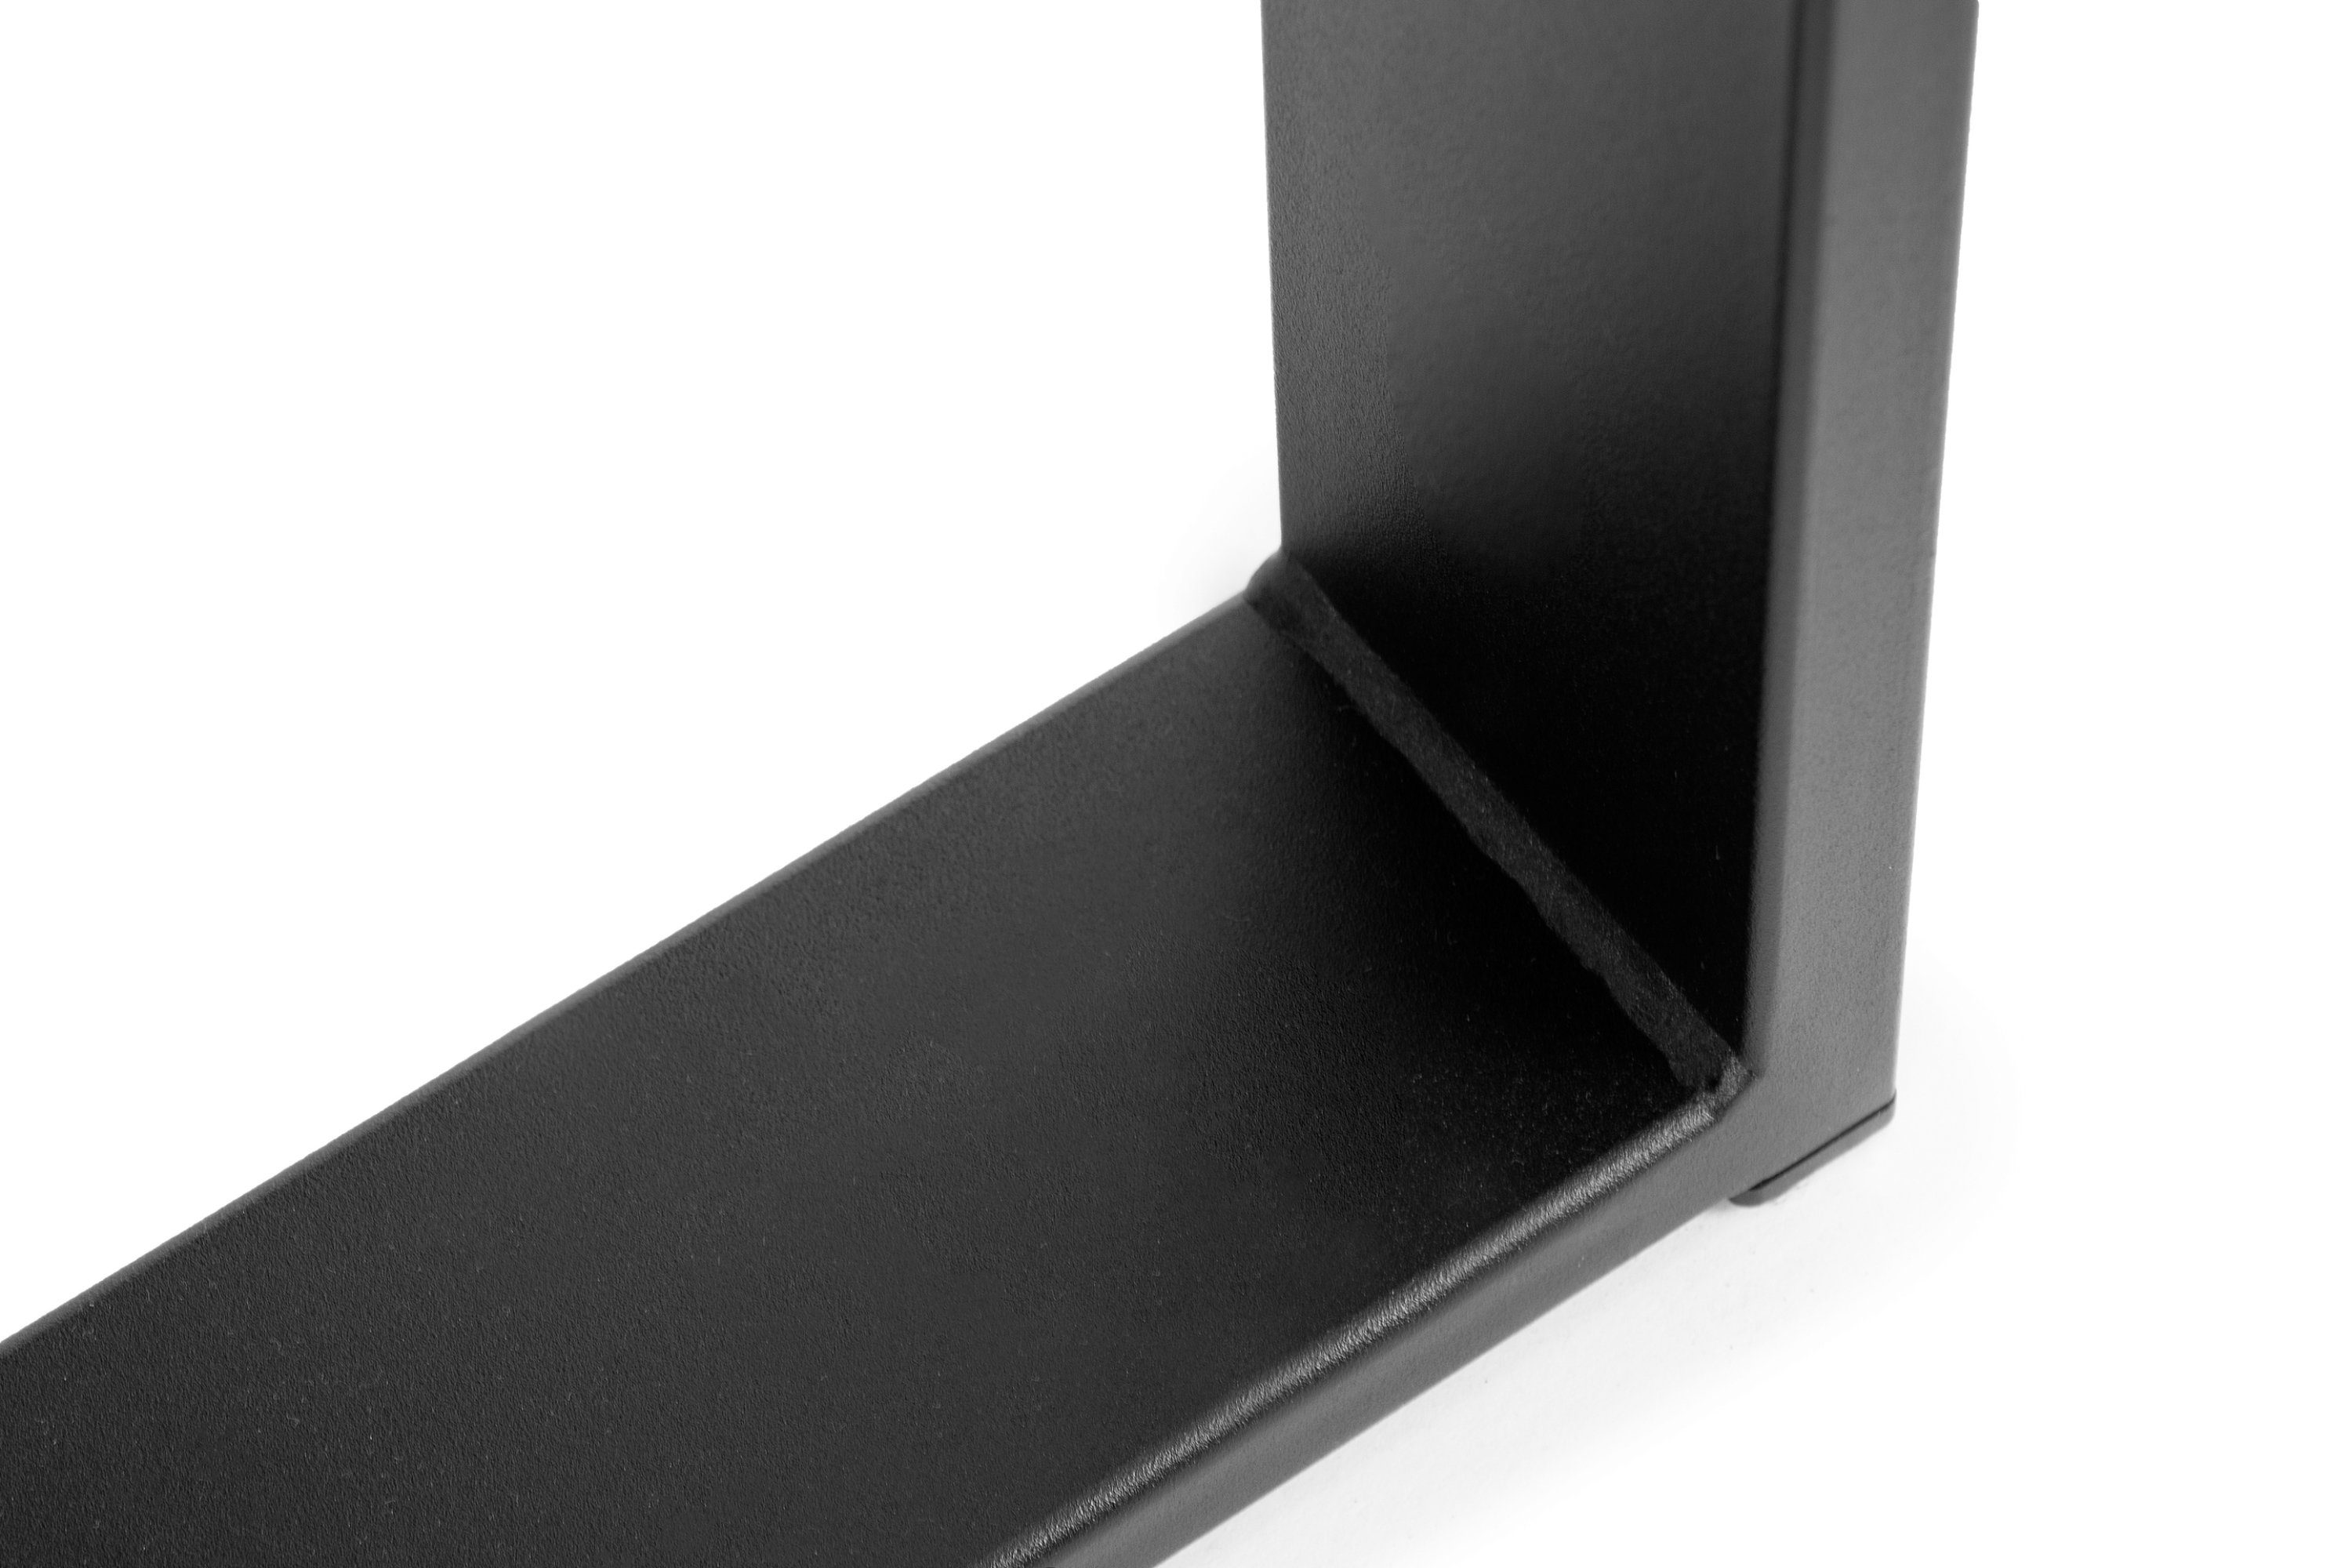 Konsimo Esstisch CETO Küchentisch Esszimmertisch dunkel ausziehbar dunkel Walnuss 150x80cm, Loft-Stil bis 190cm, rechteckig, | Walnuss